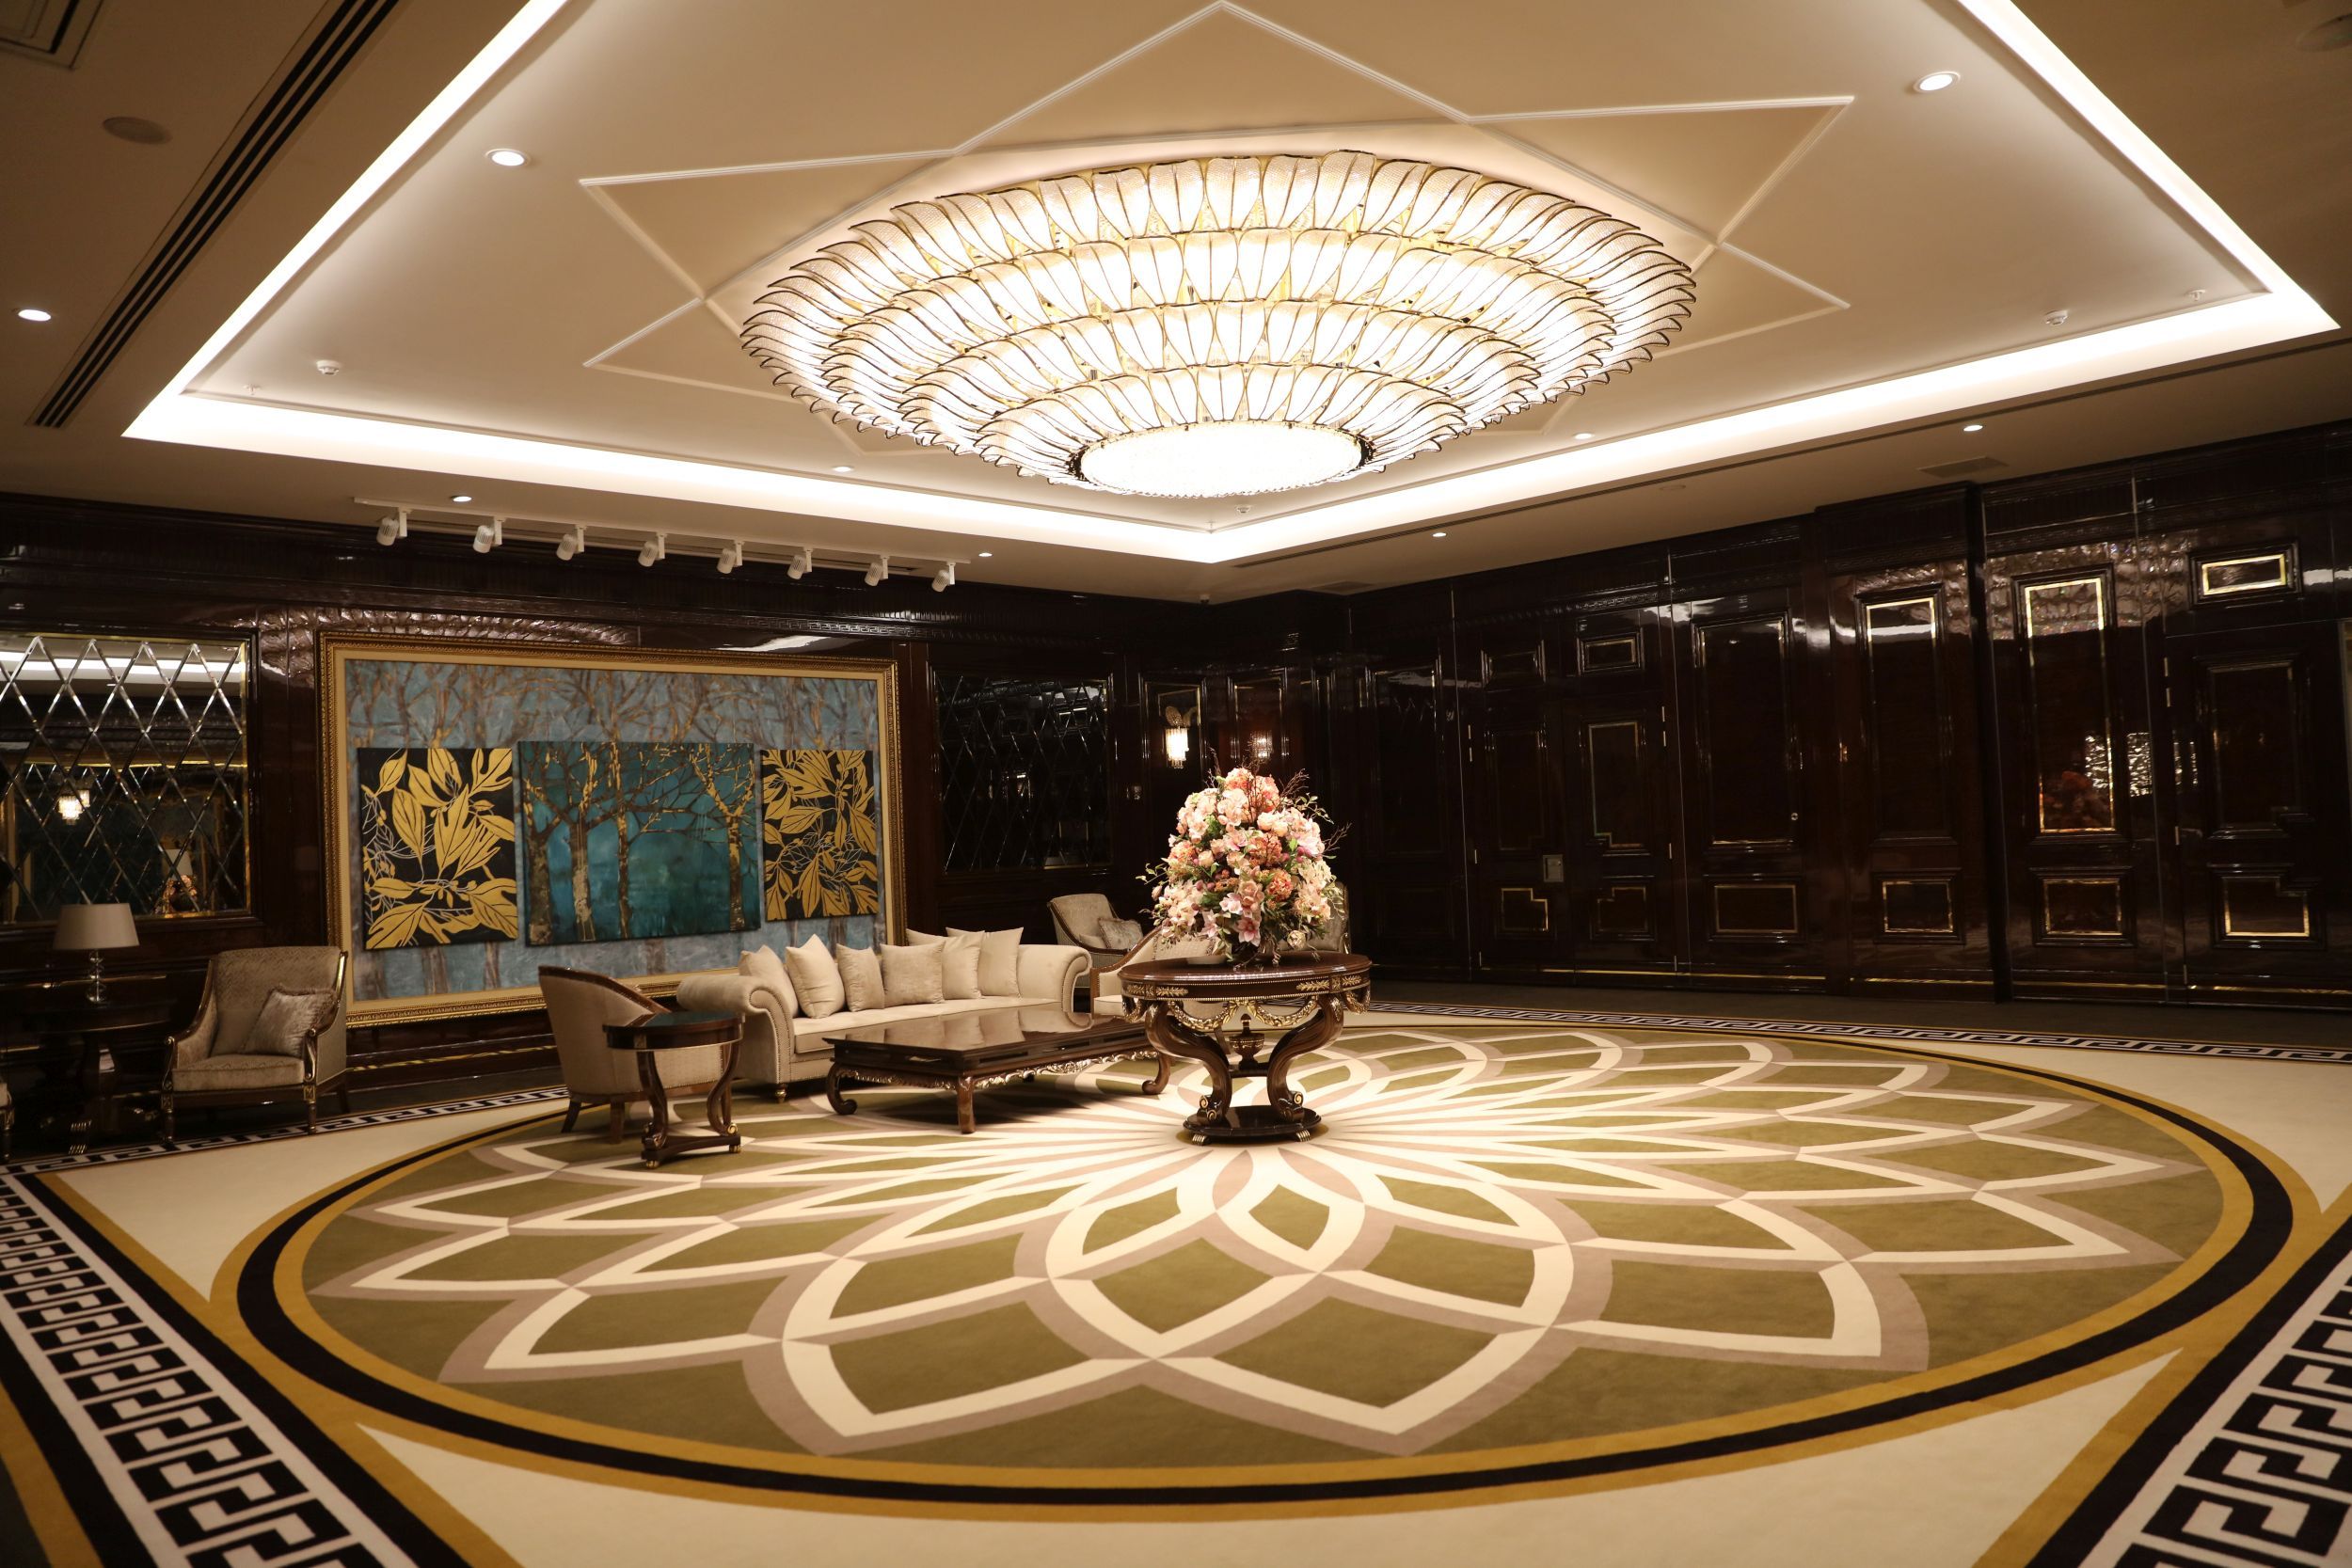 Latanya Hotel Ankara